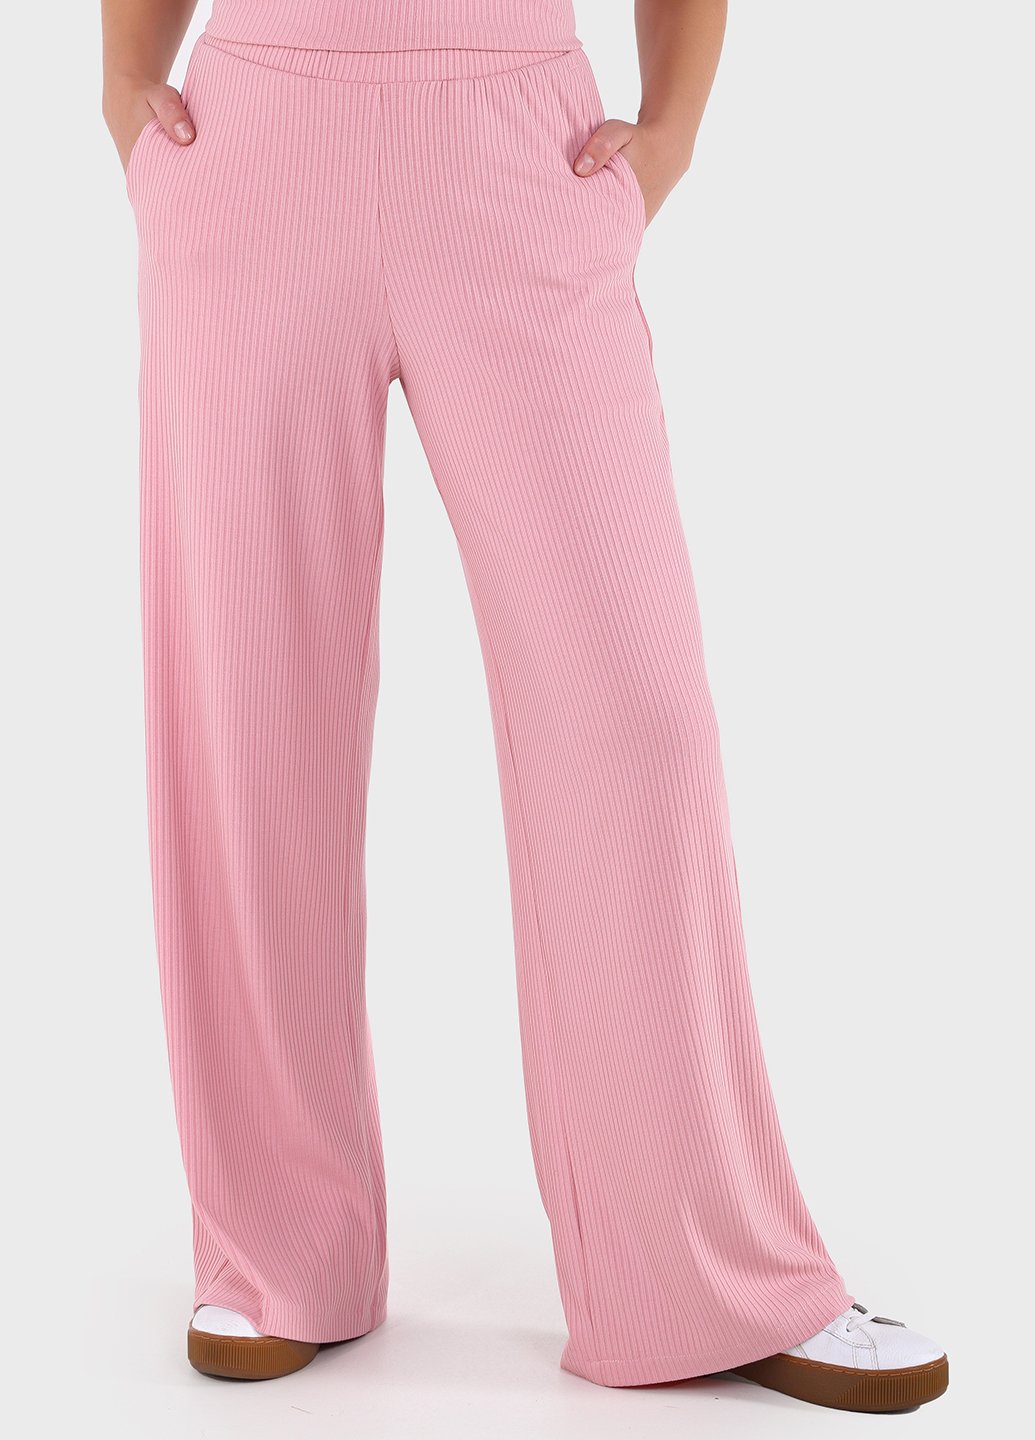 Летние брюки женские палаццо Merlini Амаранти 600000072 - Розовый, 42-44